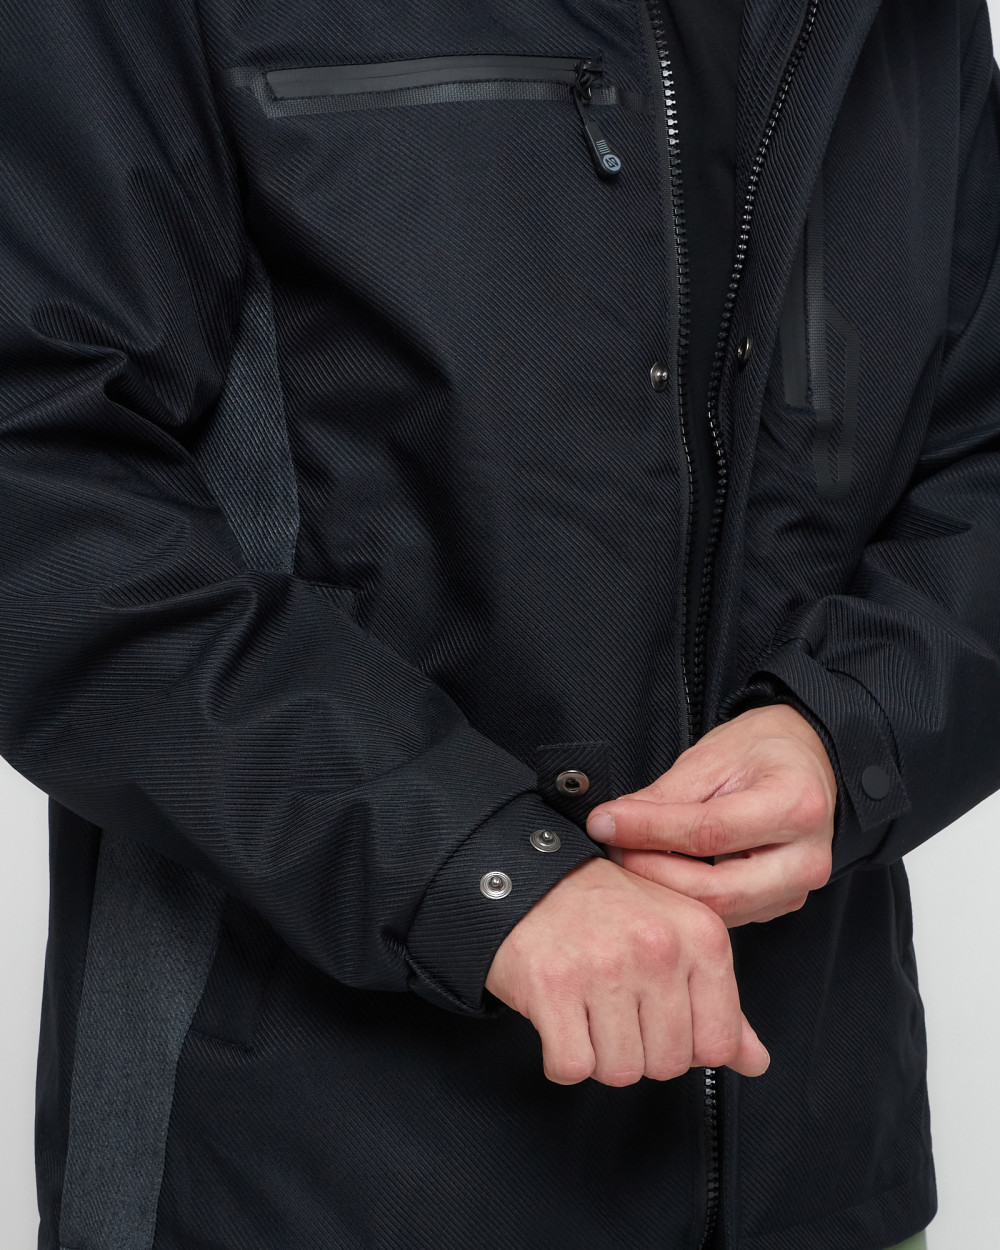 Купить куртку мужскую спортивную весеннюю оптом от производителя недорого в Москве 6652TS 1